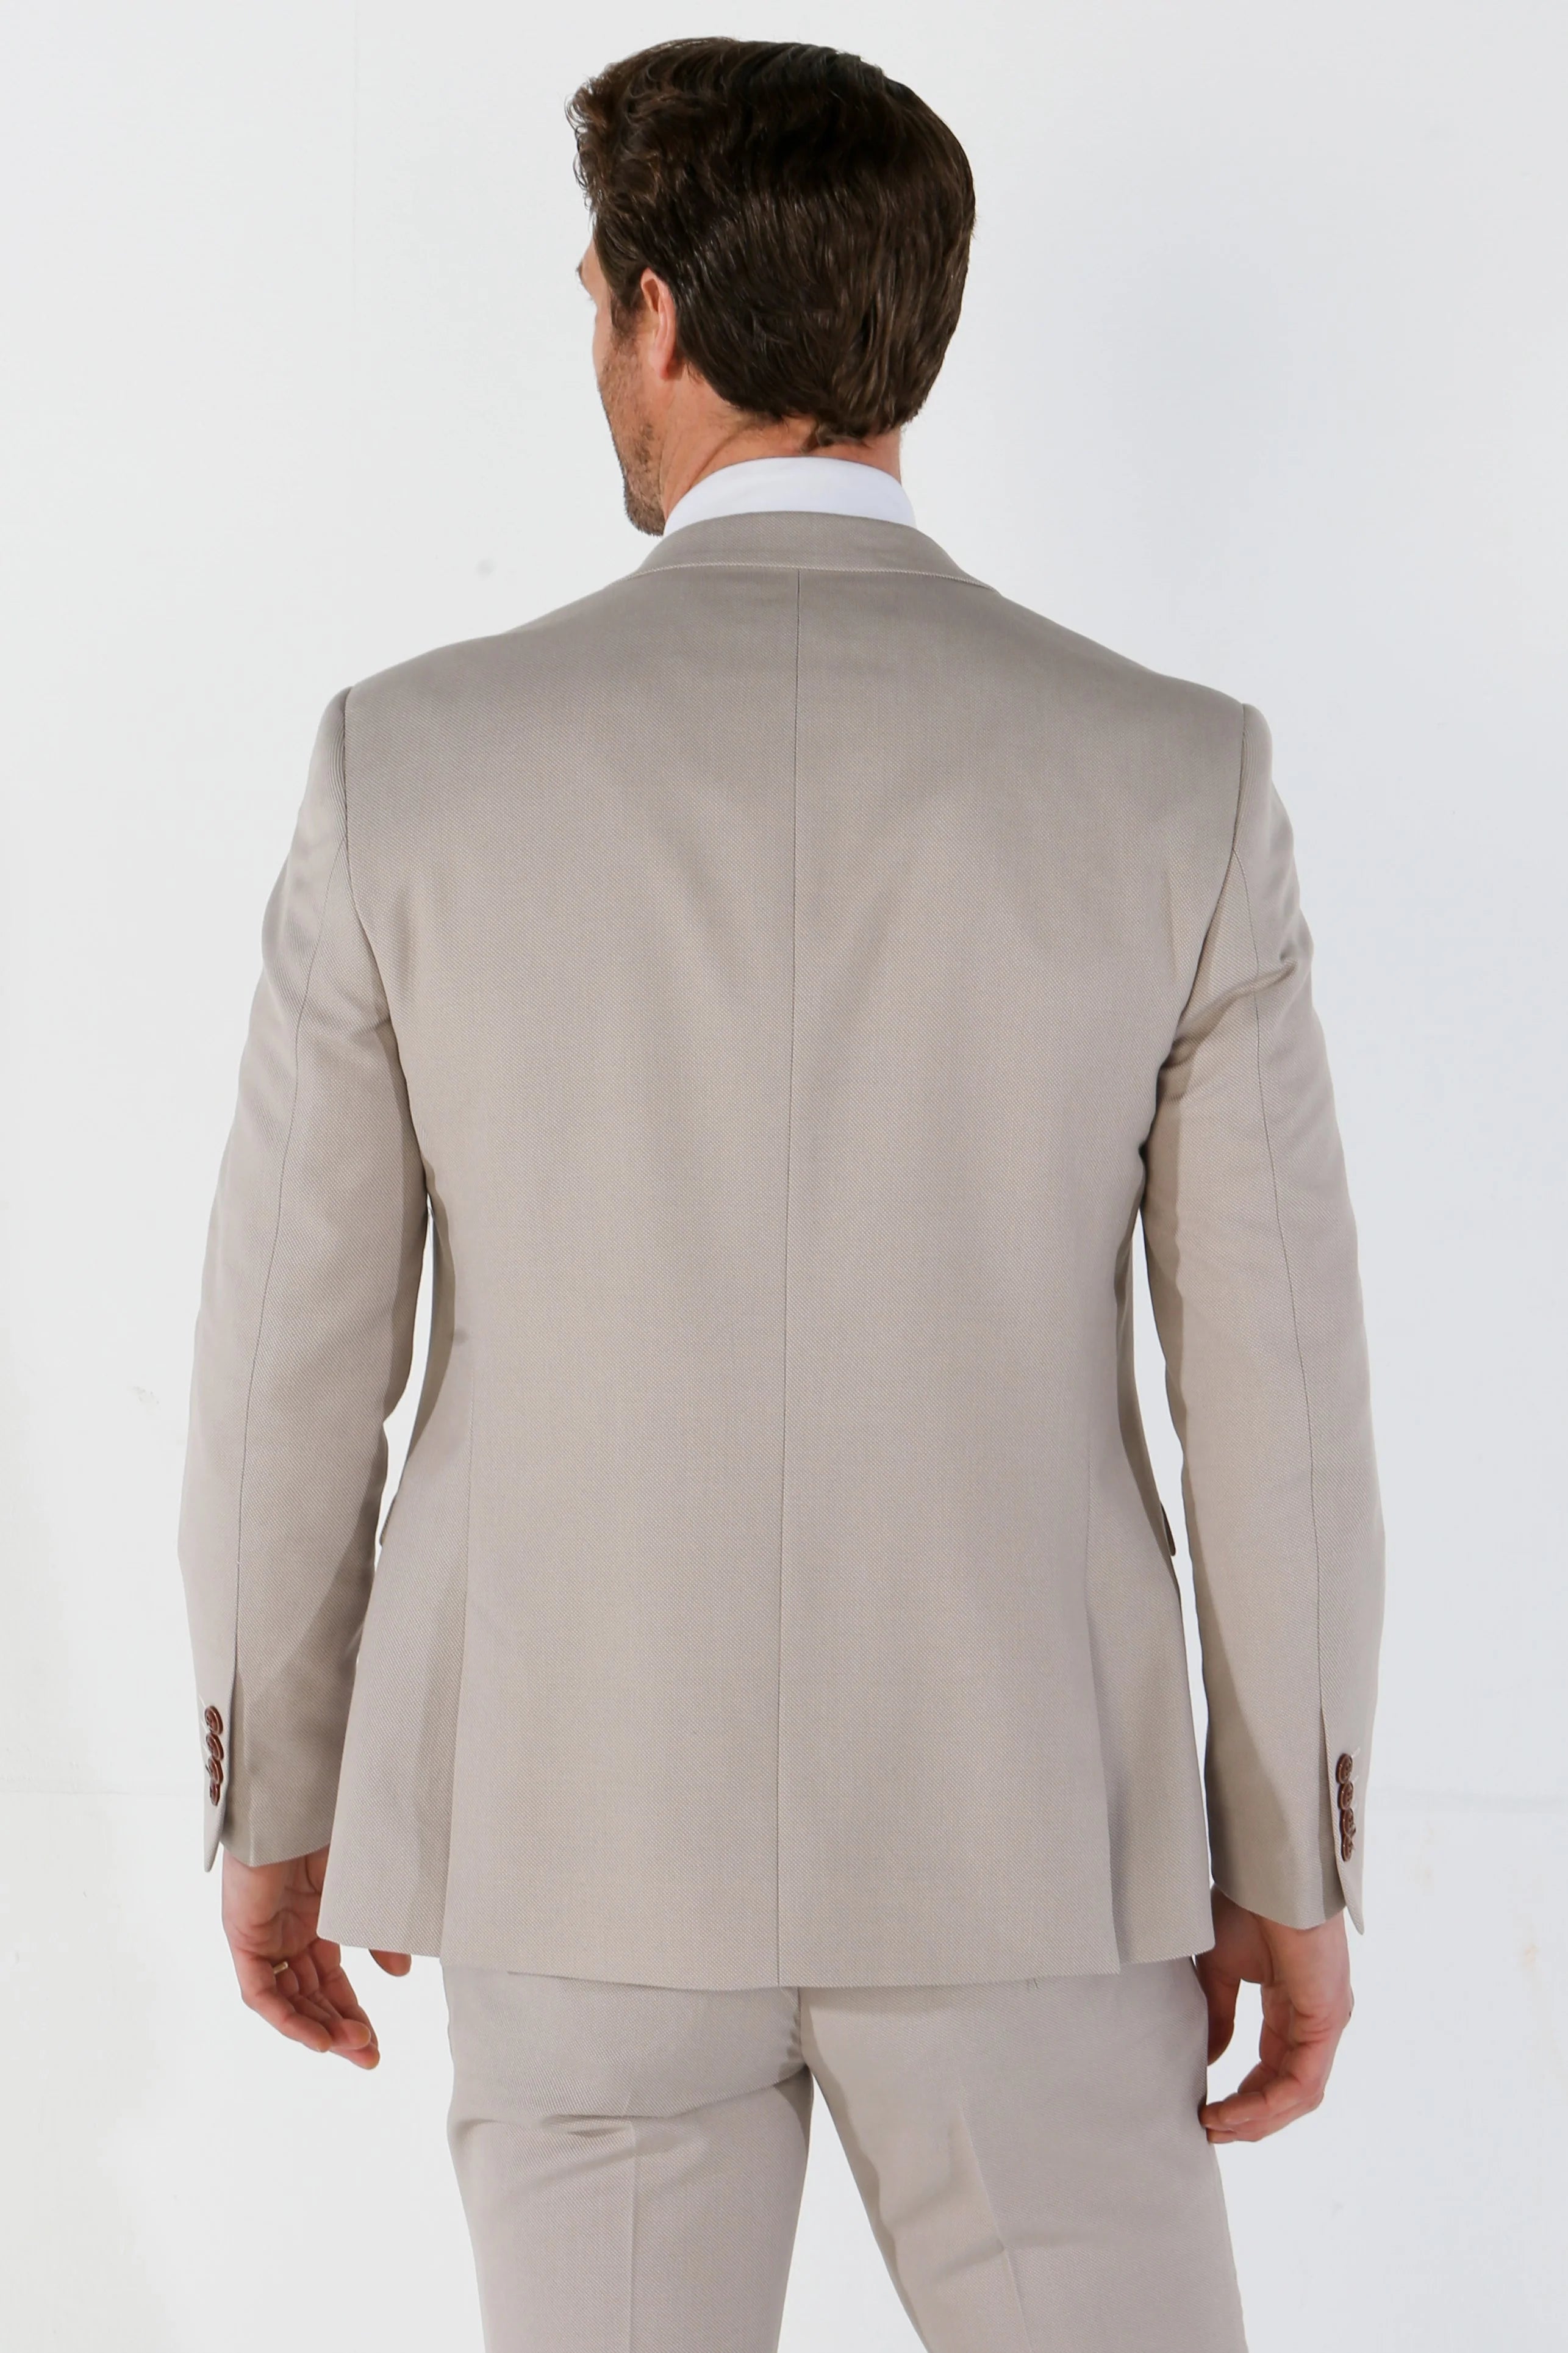 Mayfair - Men's Beige Birdseye Tailored Fit Blazer